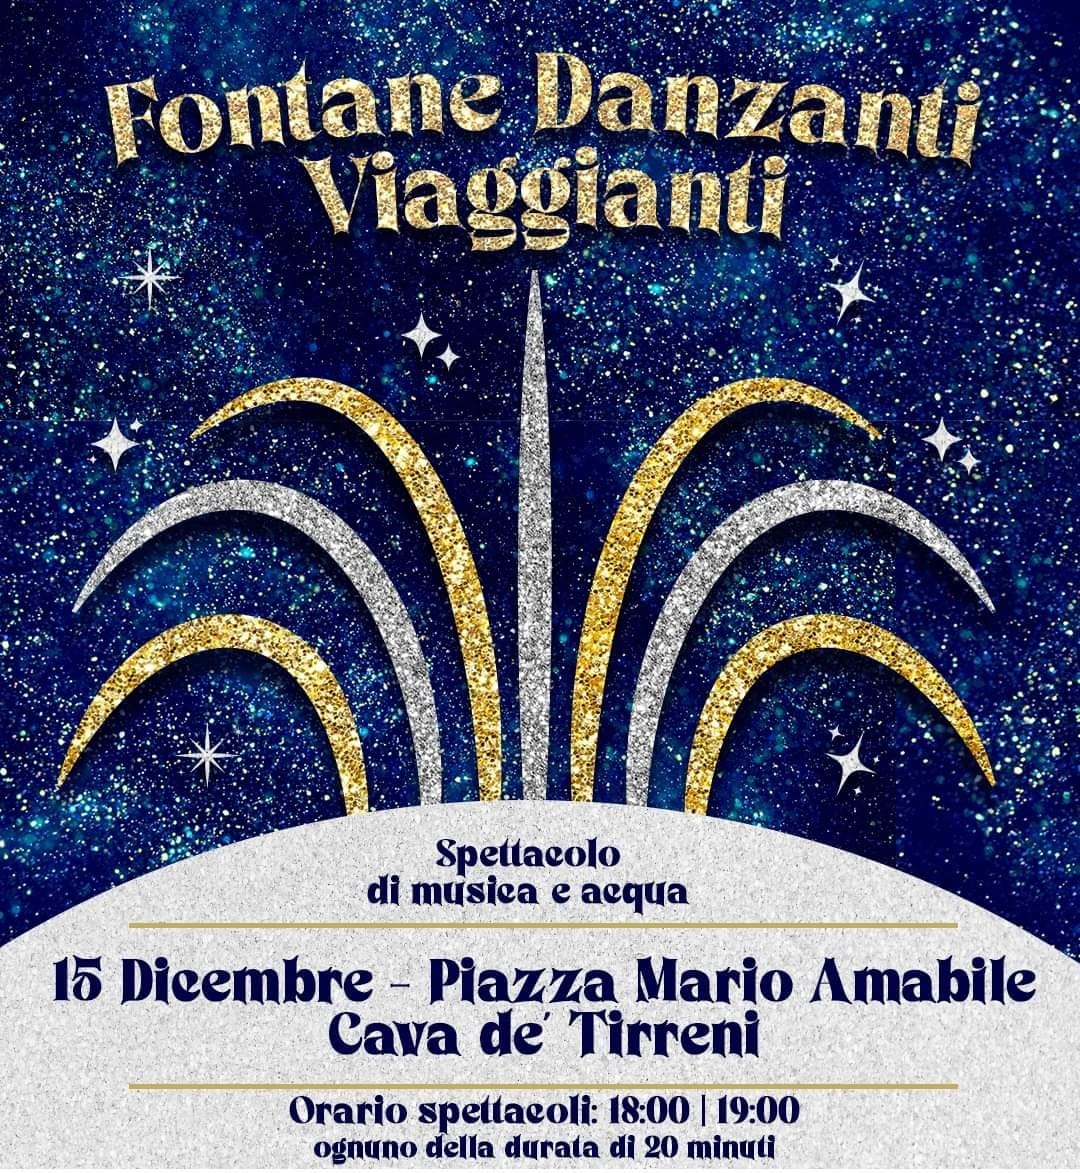 Lo spettacolo itinerante “Le Fontane Danzanti Viaggianti” questa sera a Cava de’ Tirreni (SA)